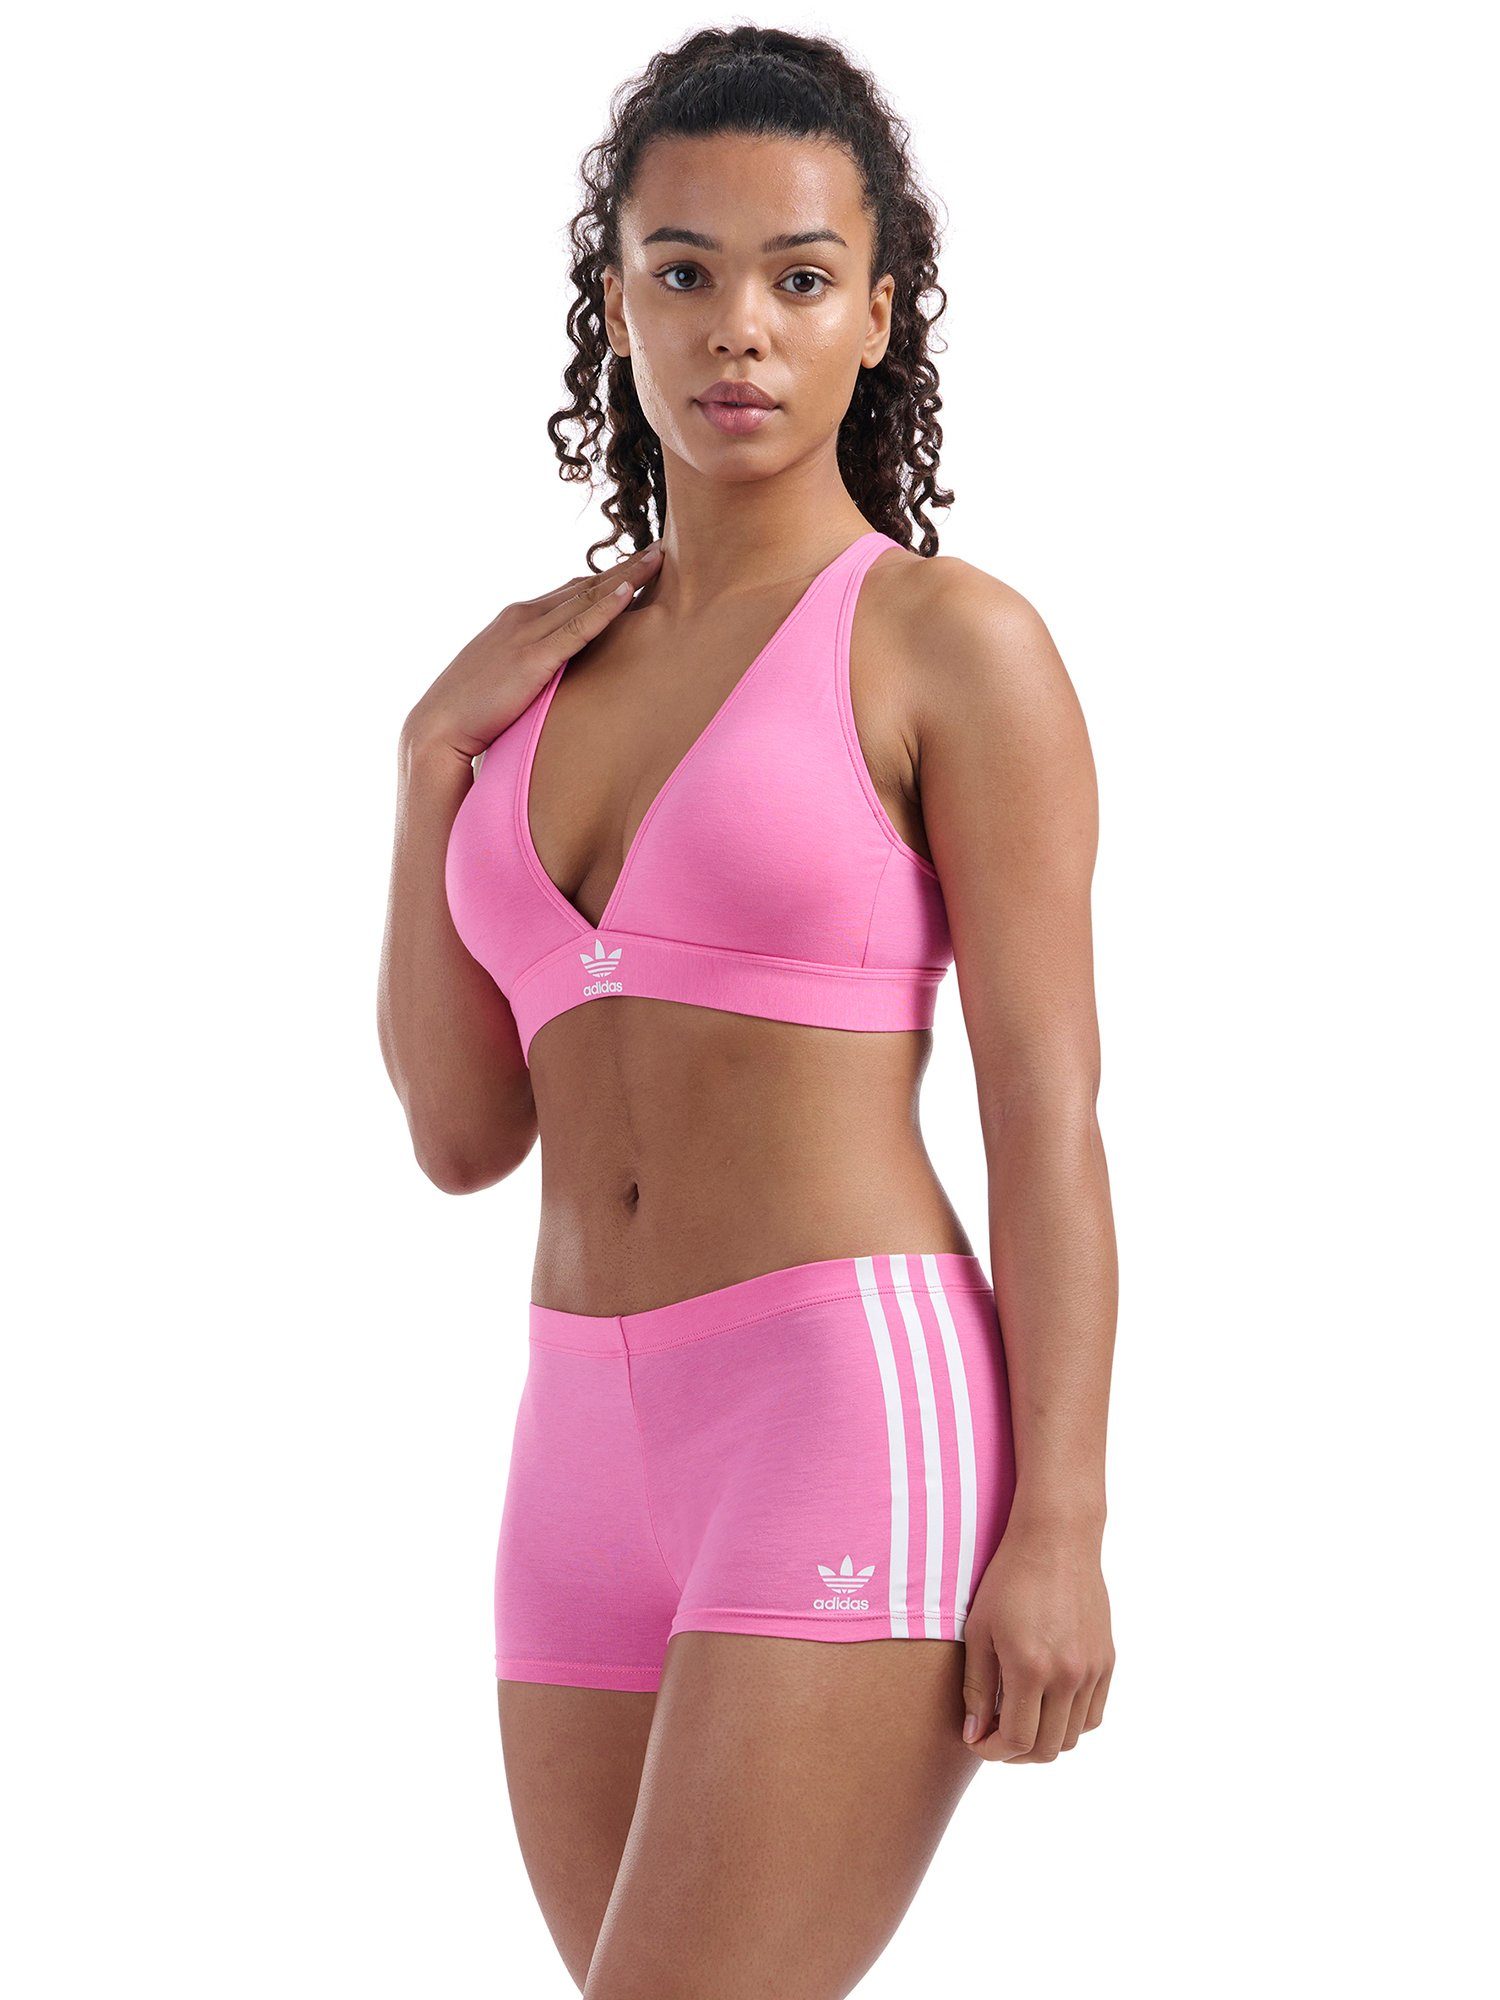 bra Unlined bralette Triangel-BH adidas Originals bustier pink lucid